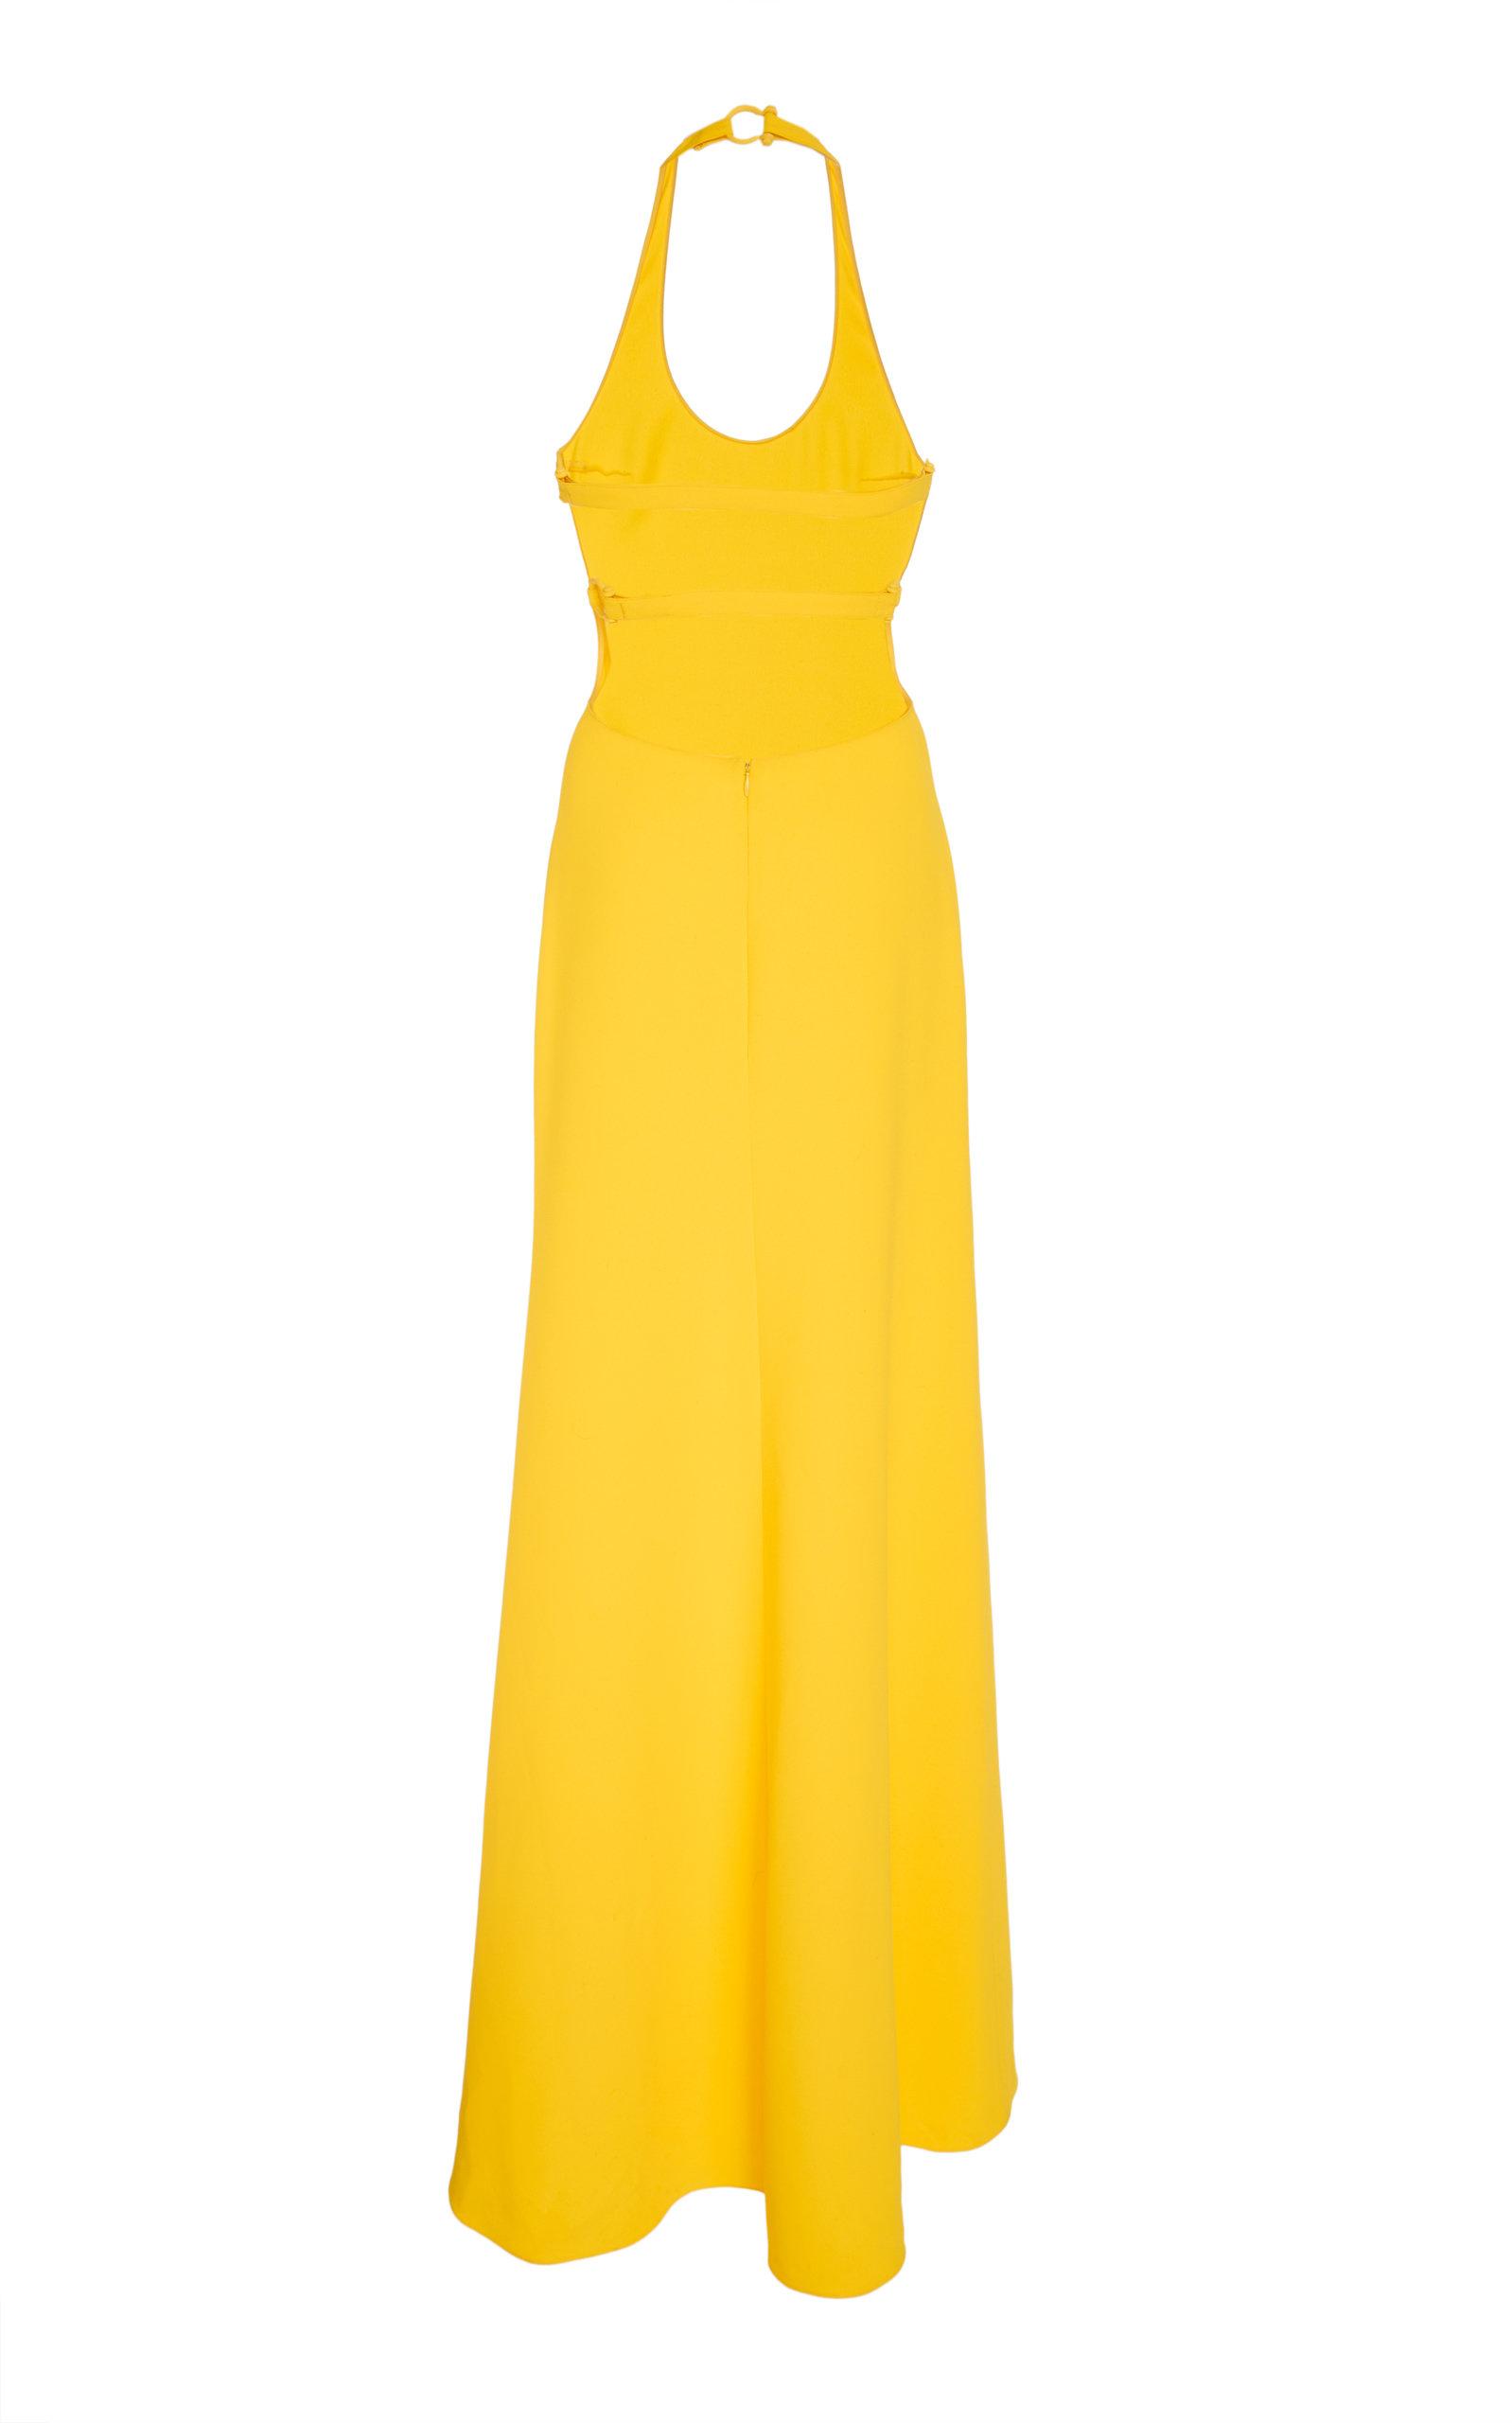 Lauren Ralph Lauren 253766408001 $190 Women's Gold Tichina Strapless Dress  - NWT - M Couture